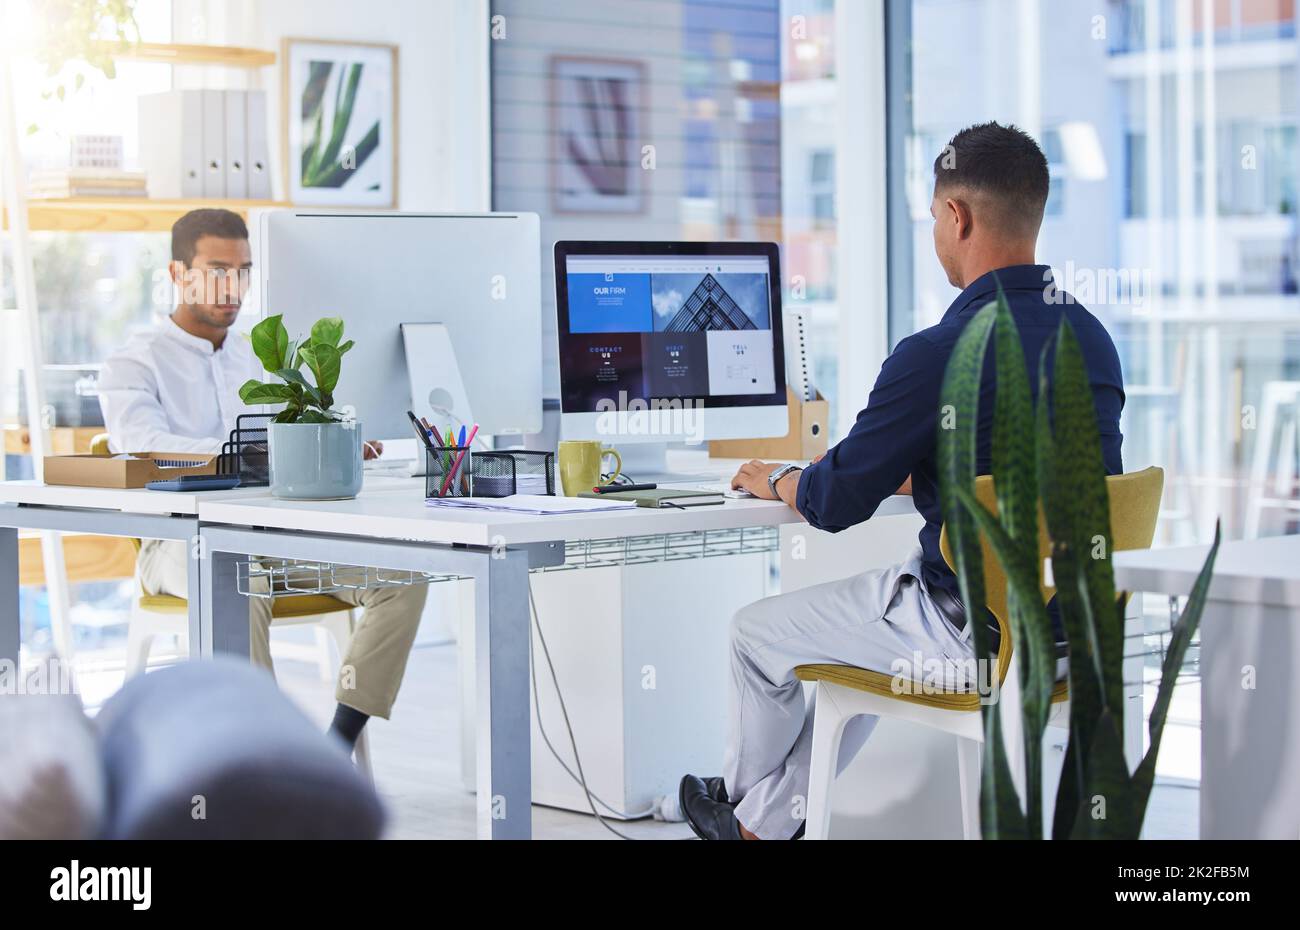 Sie wissen, wie Sie uns erreichen können. Aufnahme von zwei Männern, die in einem modernen Büro an ihren Computern arbeiten. Stockfoto